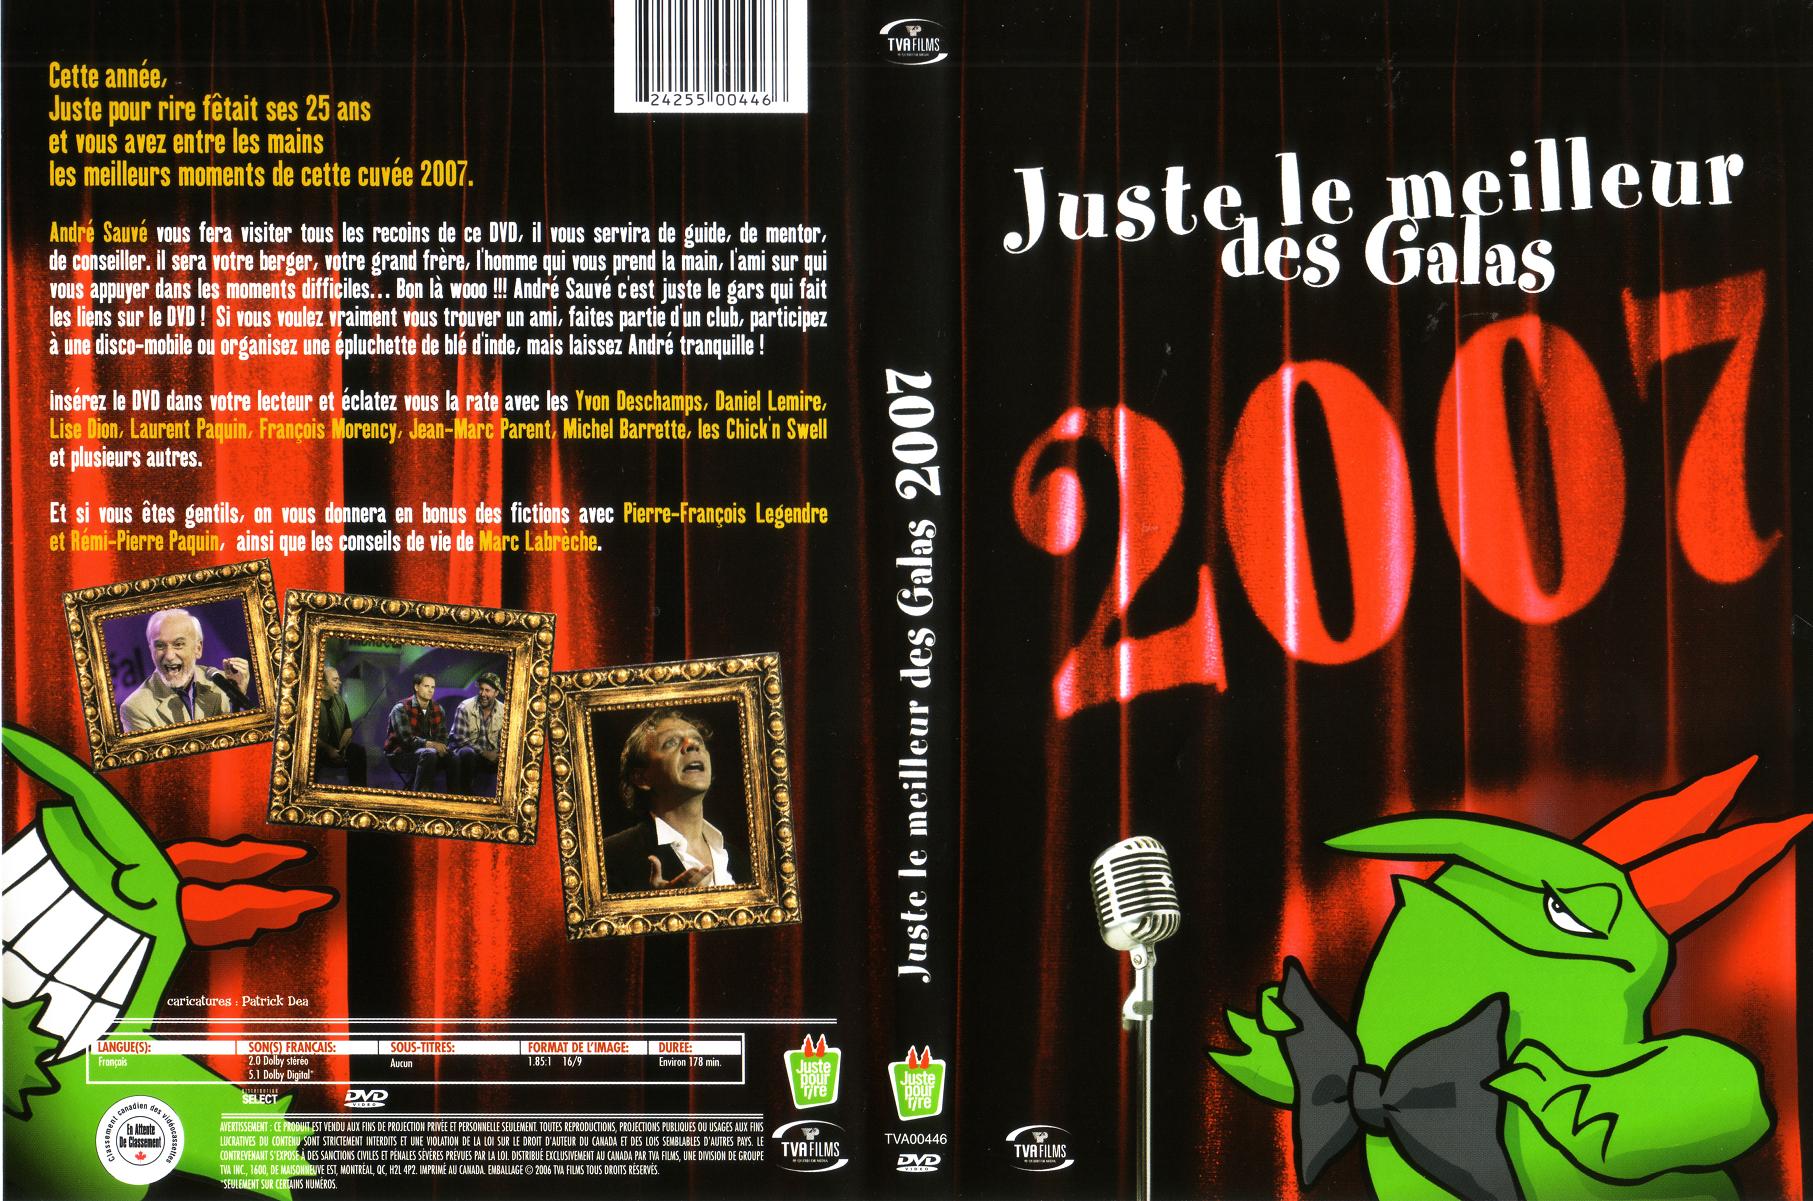 Jaquette DVD Juste le meilleur des galas 2007